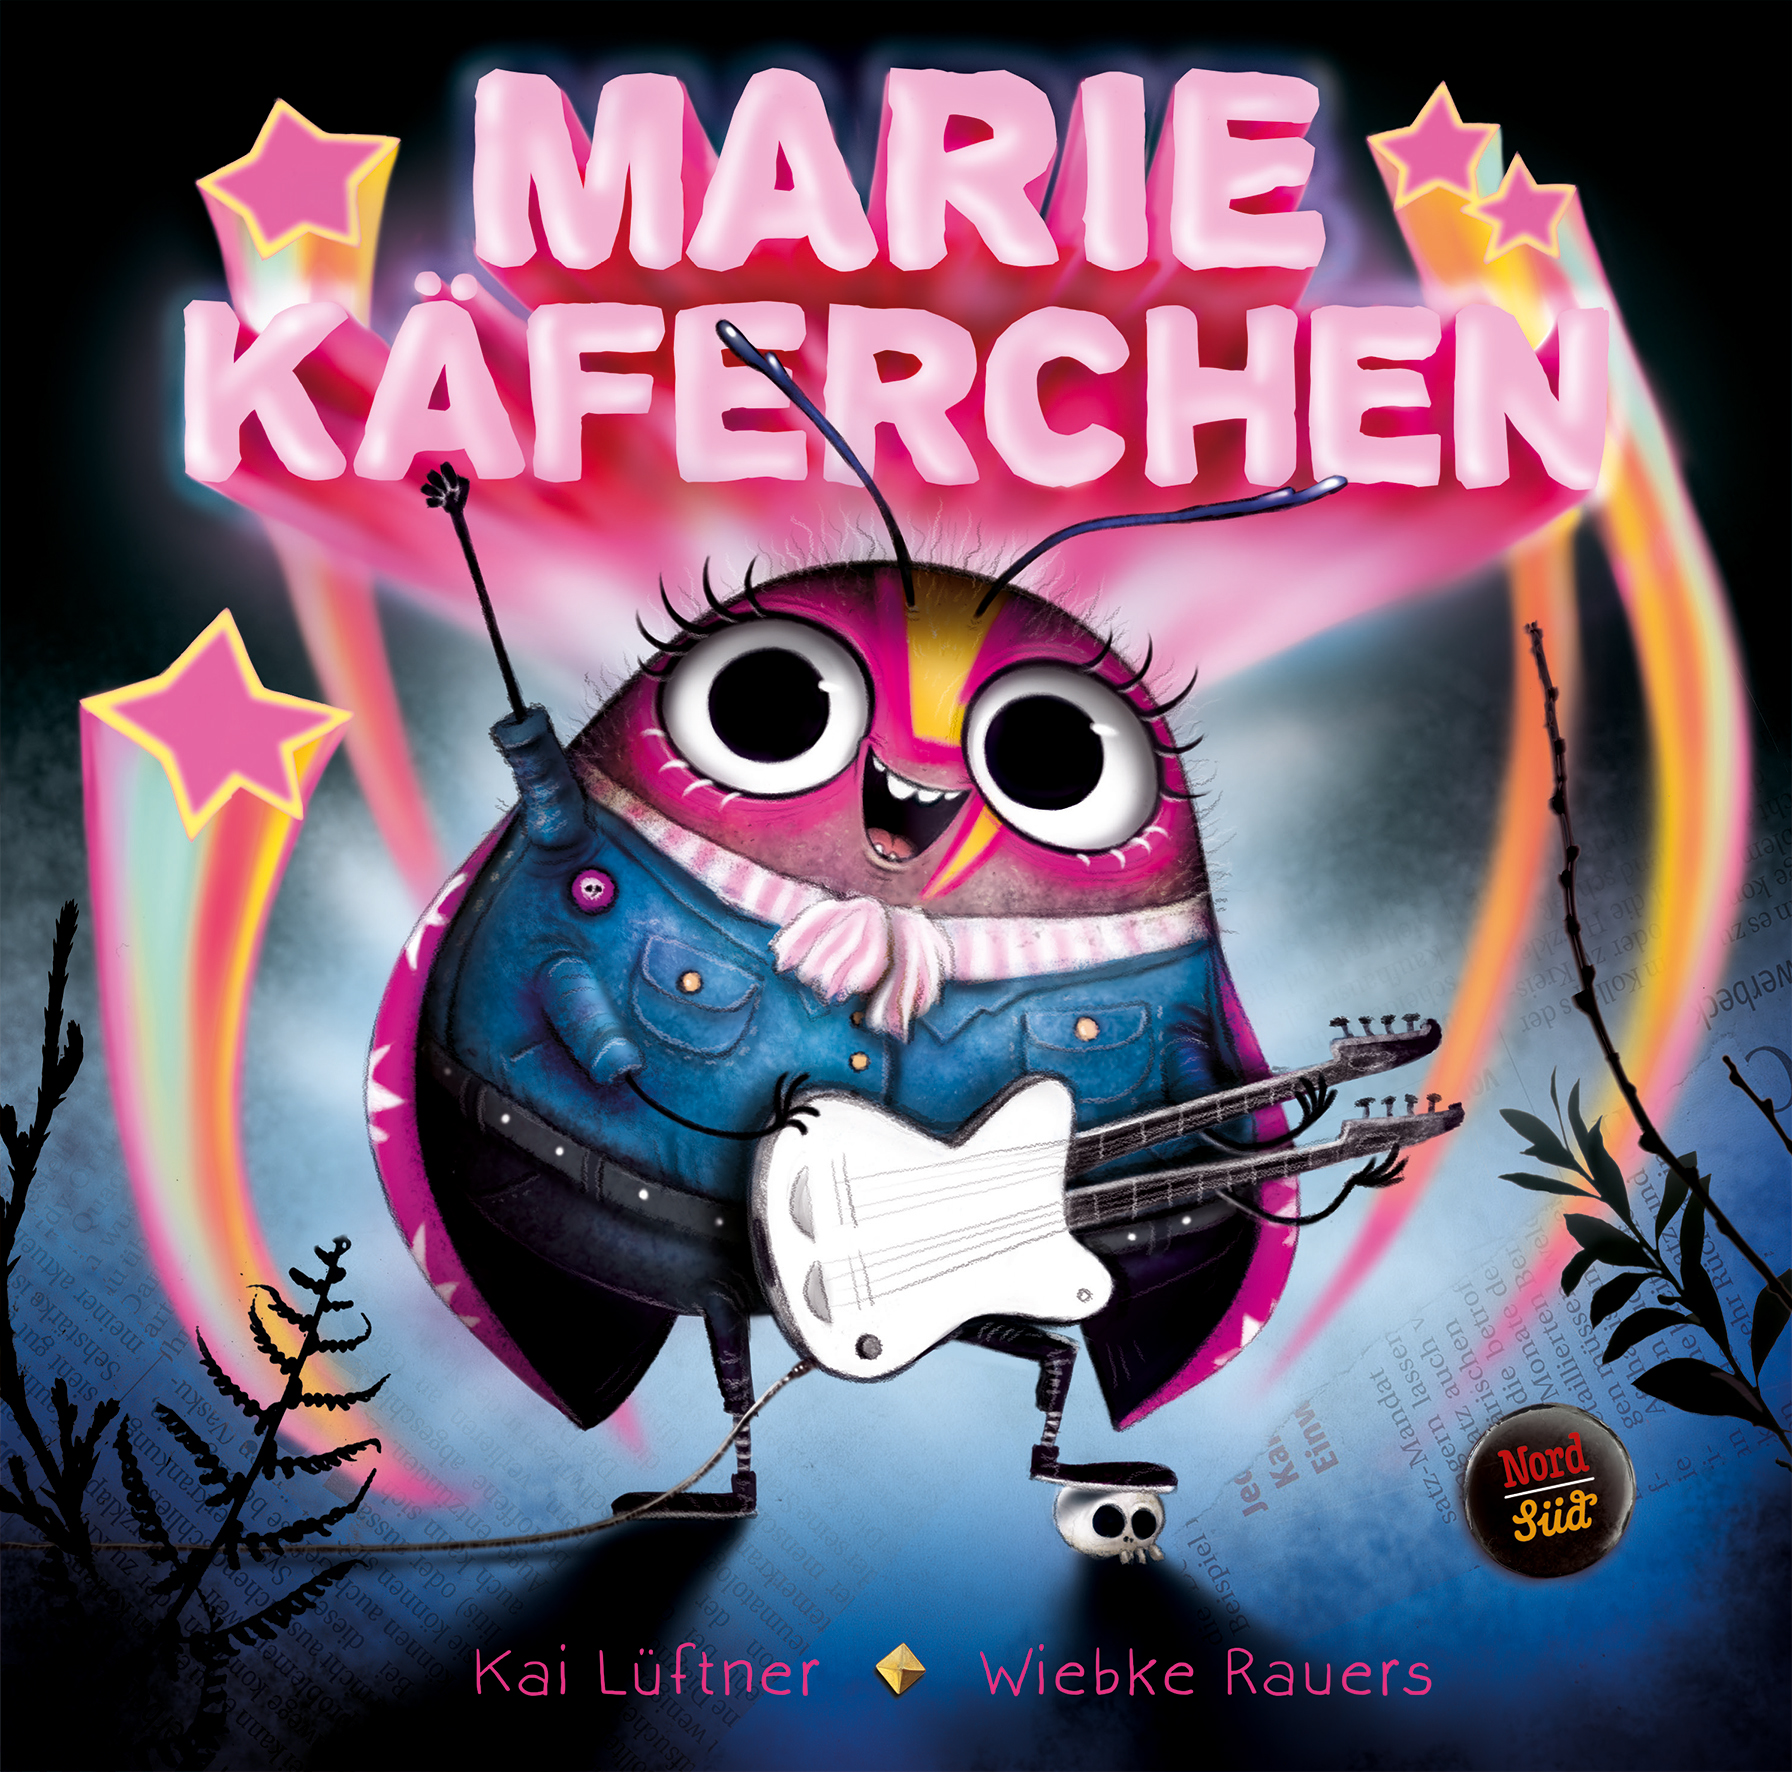 marie-kaeferchen-ein-entzueckendes-kinderbuch-fuer-metalheads-punkrocker-und-alle-die-laute-musik-moegen